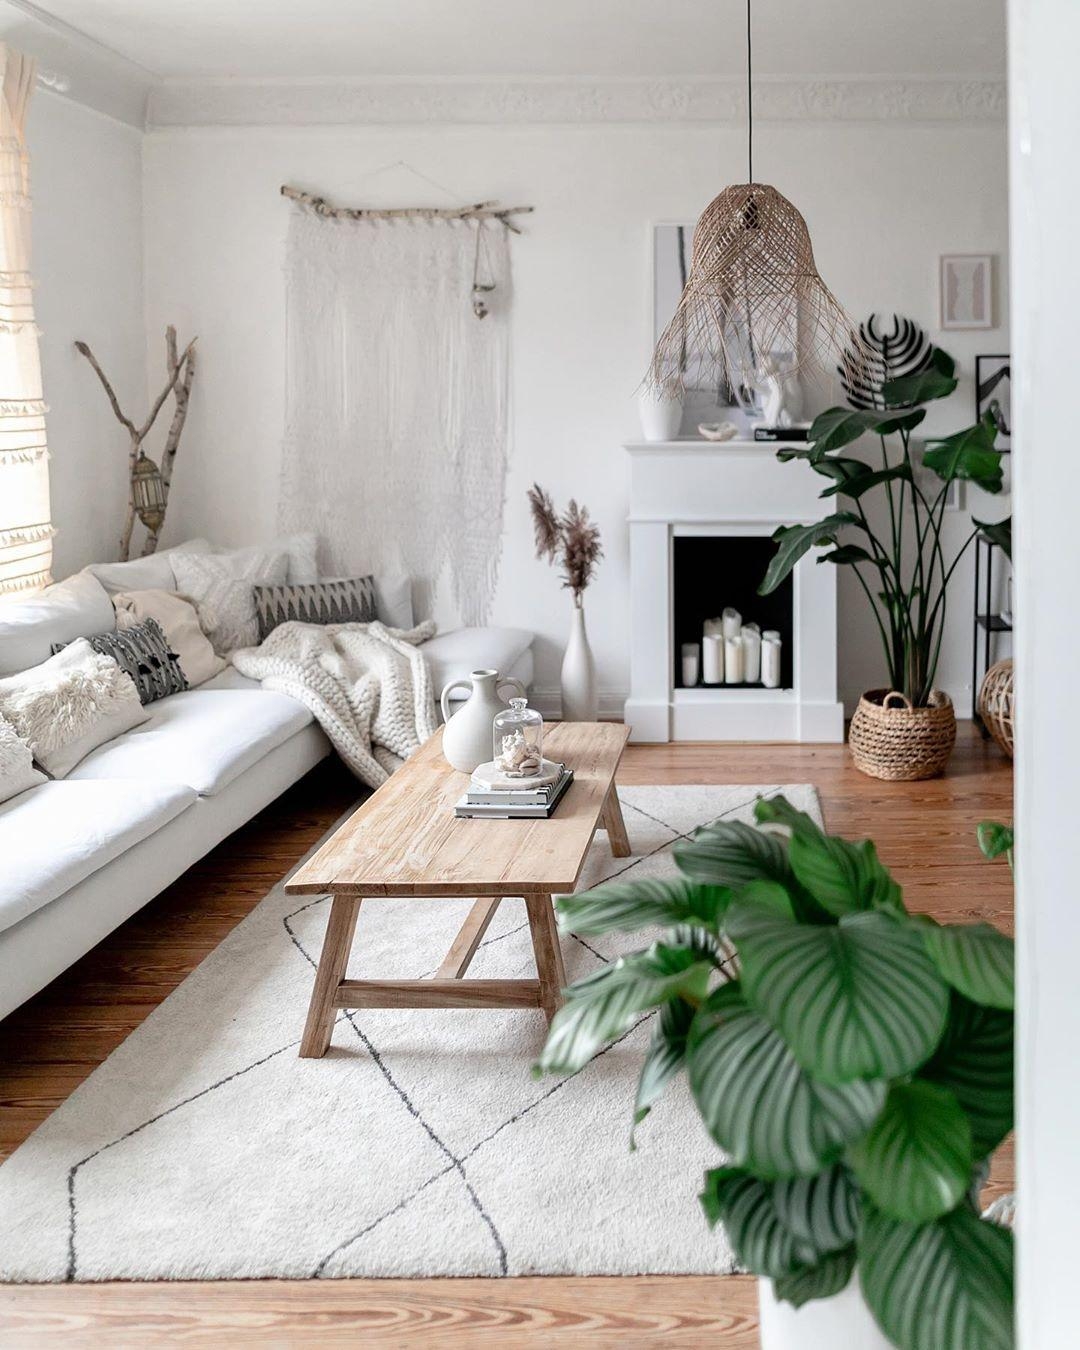 Bei dem Wetter kann man es sich ja nur zu Hause gemütlich machen, oder?✌️

#wohnzimmer #teppich #sofa #altbau #leuchte
